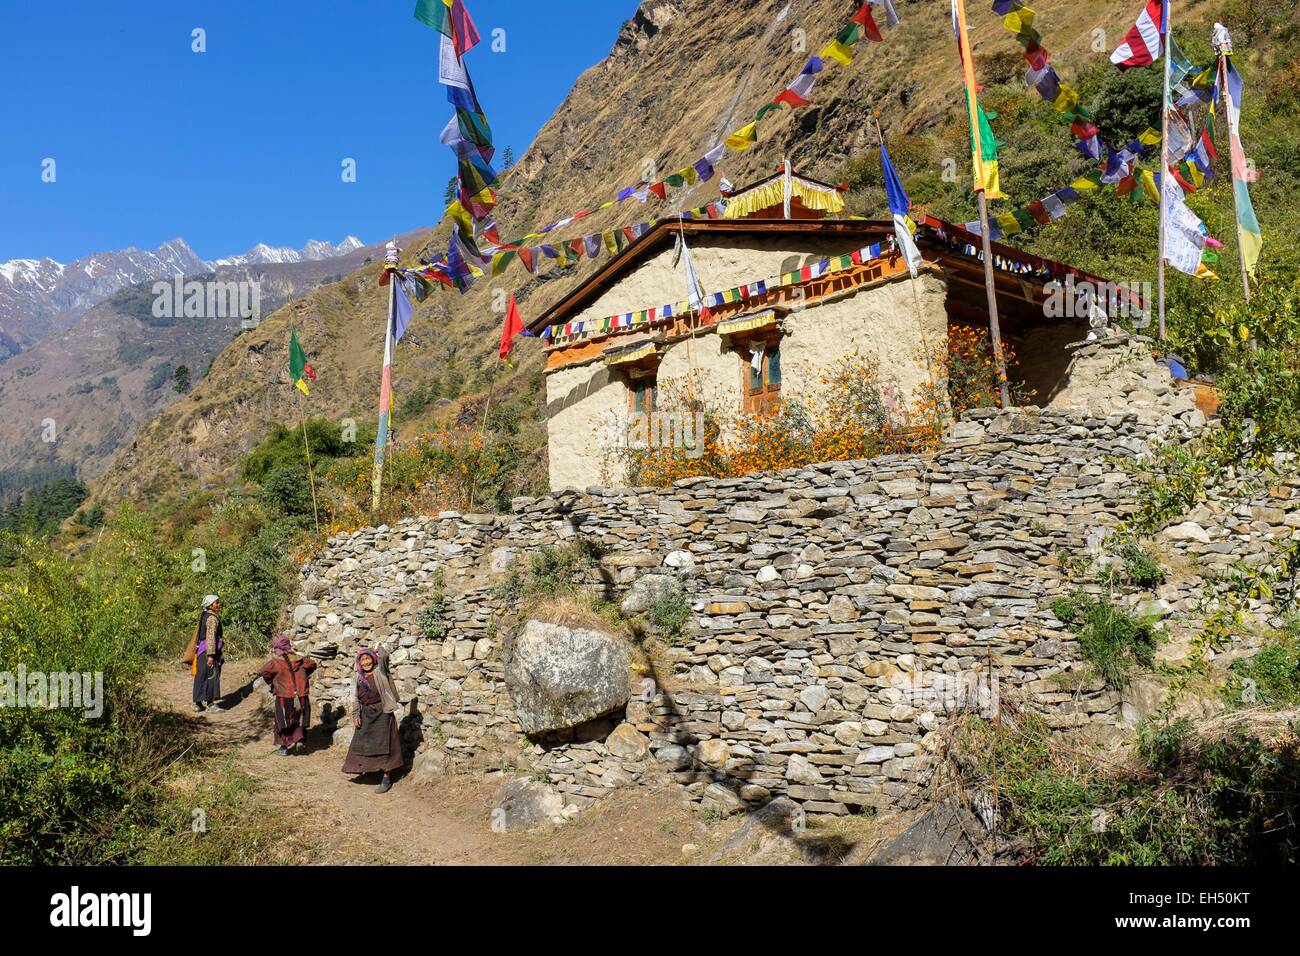 Le Népal, Gandaki zone, Tsum valley trek, monastère bouddhiste Banque D'Images